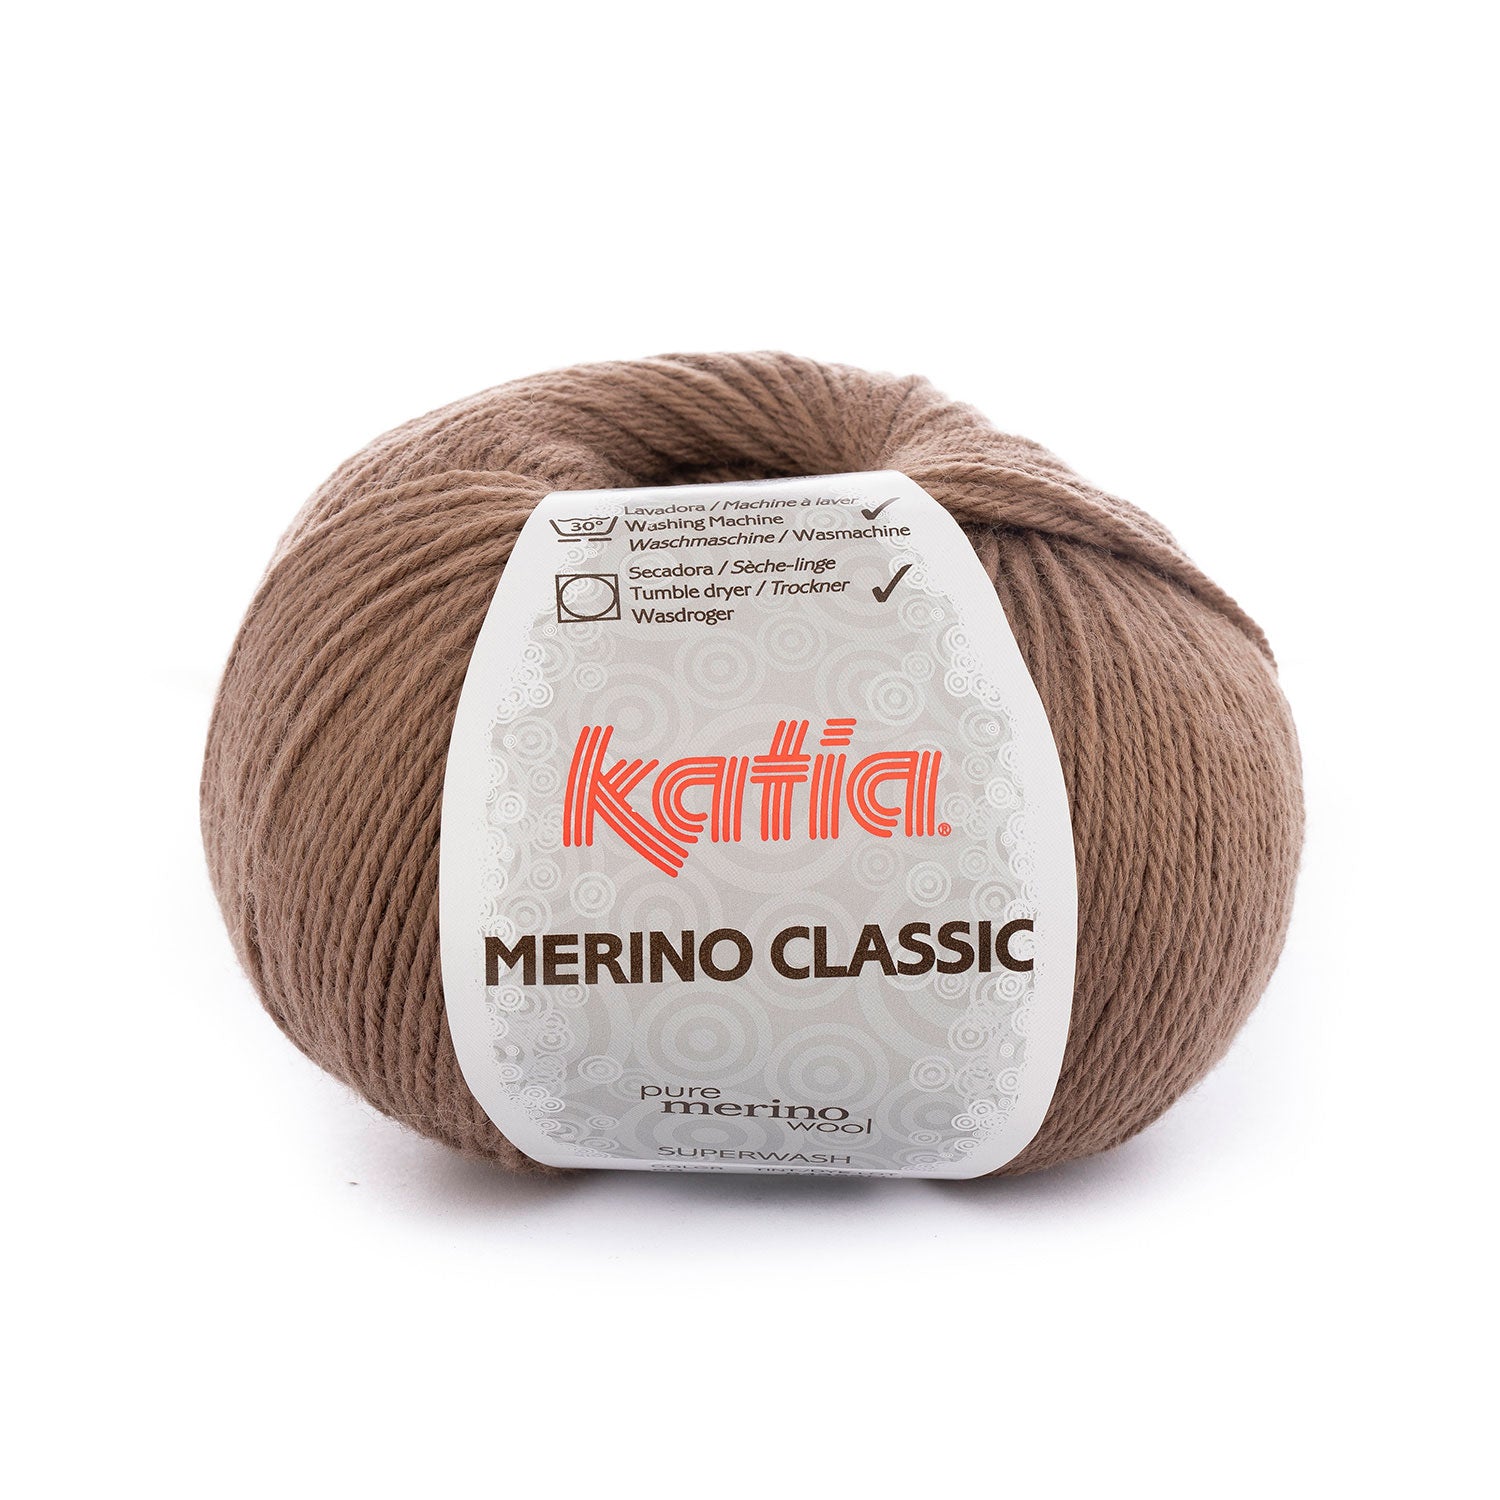 Merino classic color 68